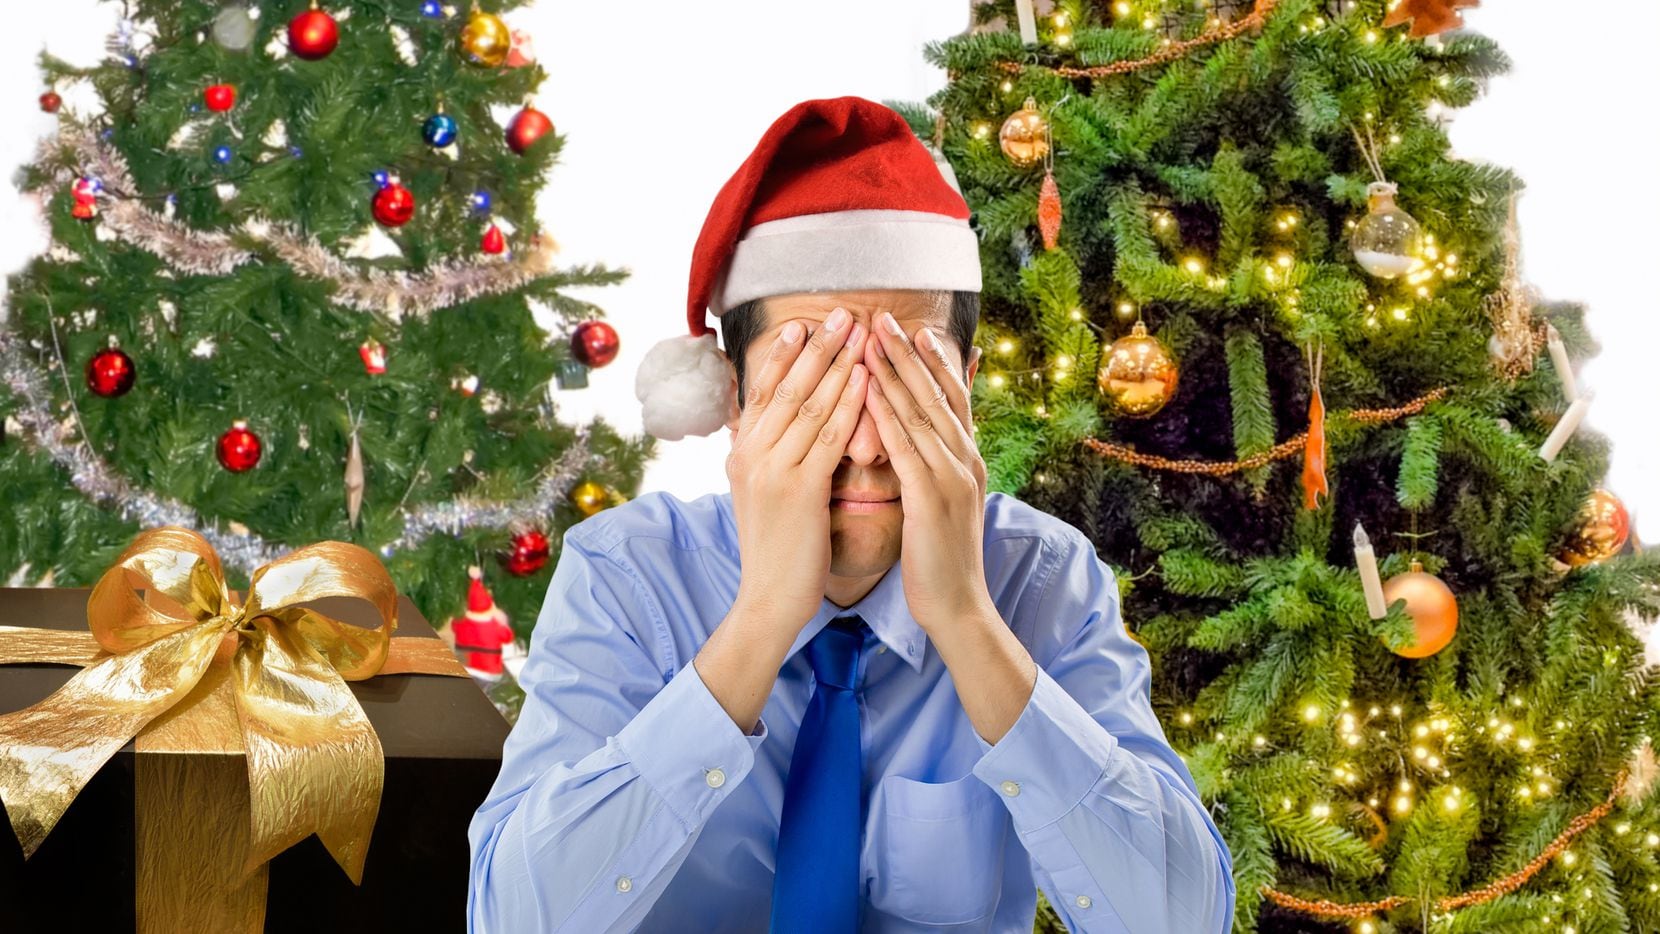 Las fiestas decembrinas pueden traer estrés y depresión, por lo que es importante tomar medidas para evitarlo.